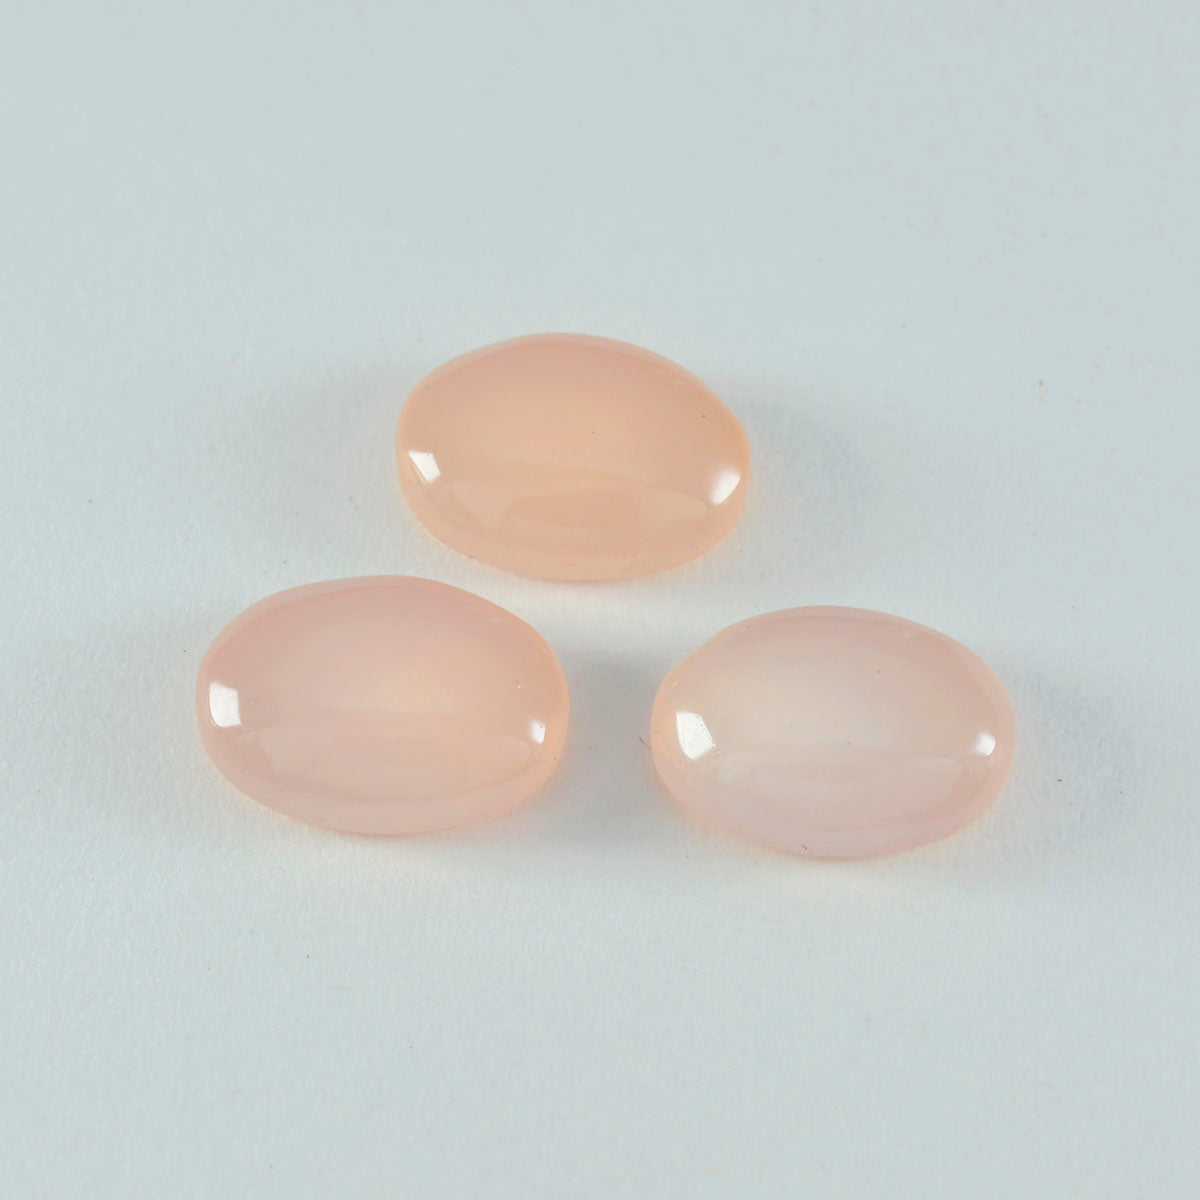 riyogems 1шт кабошон из розового кварца 10x12 мм овальной формы драгоценный камень потрясающего качества